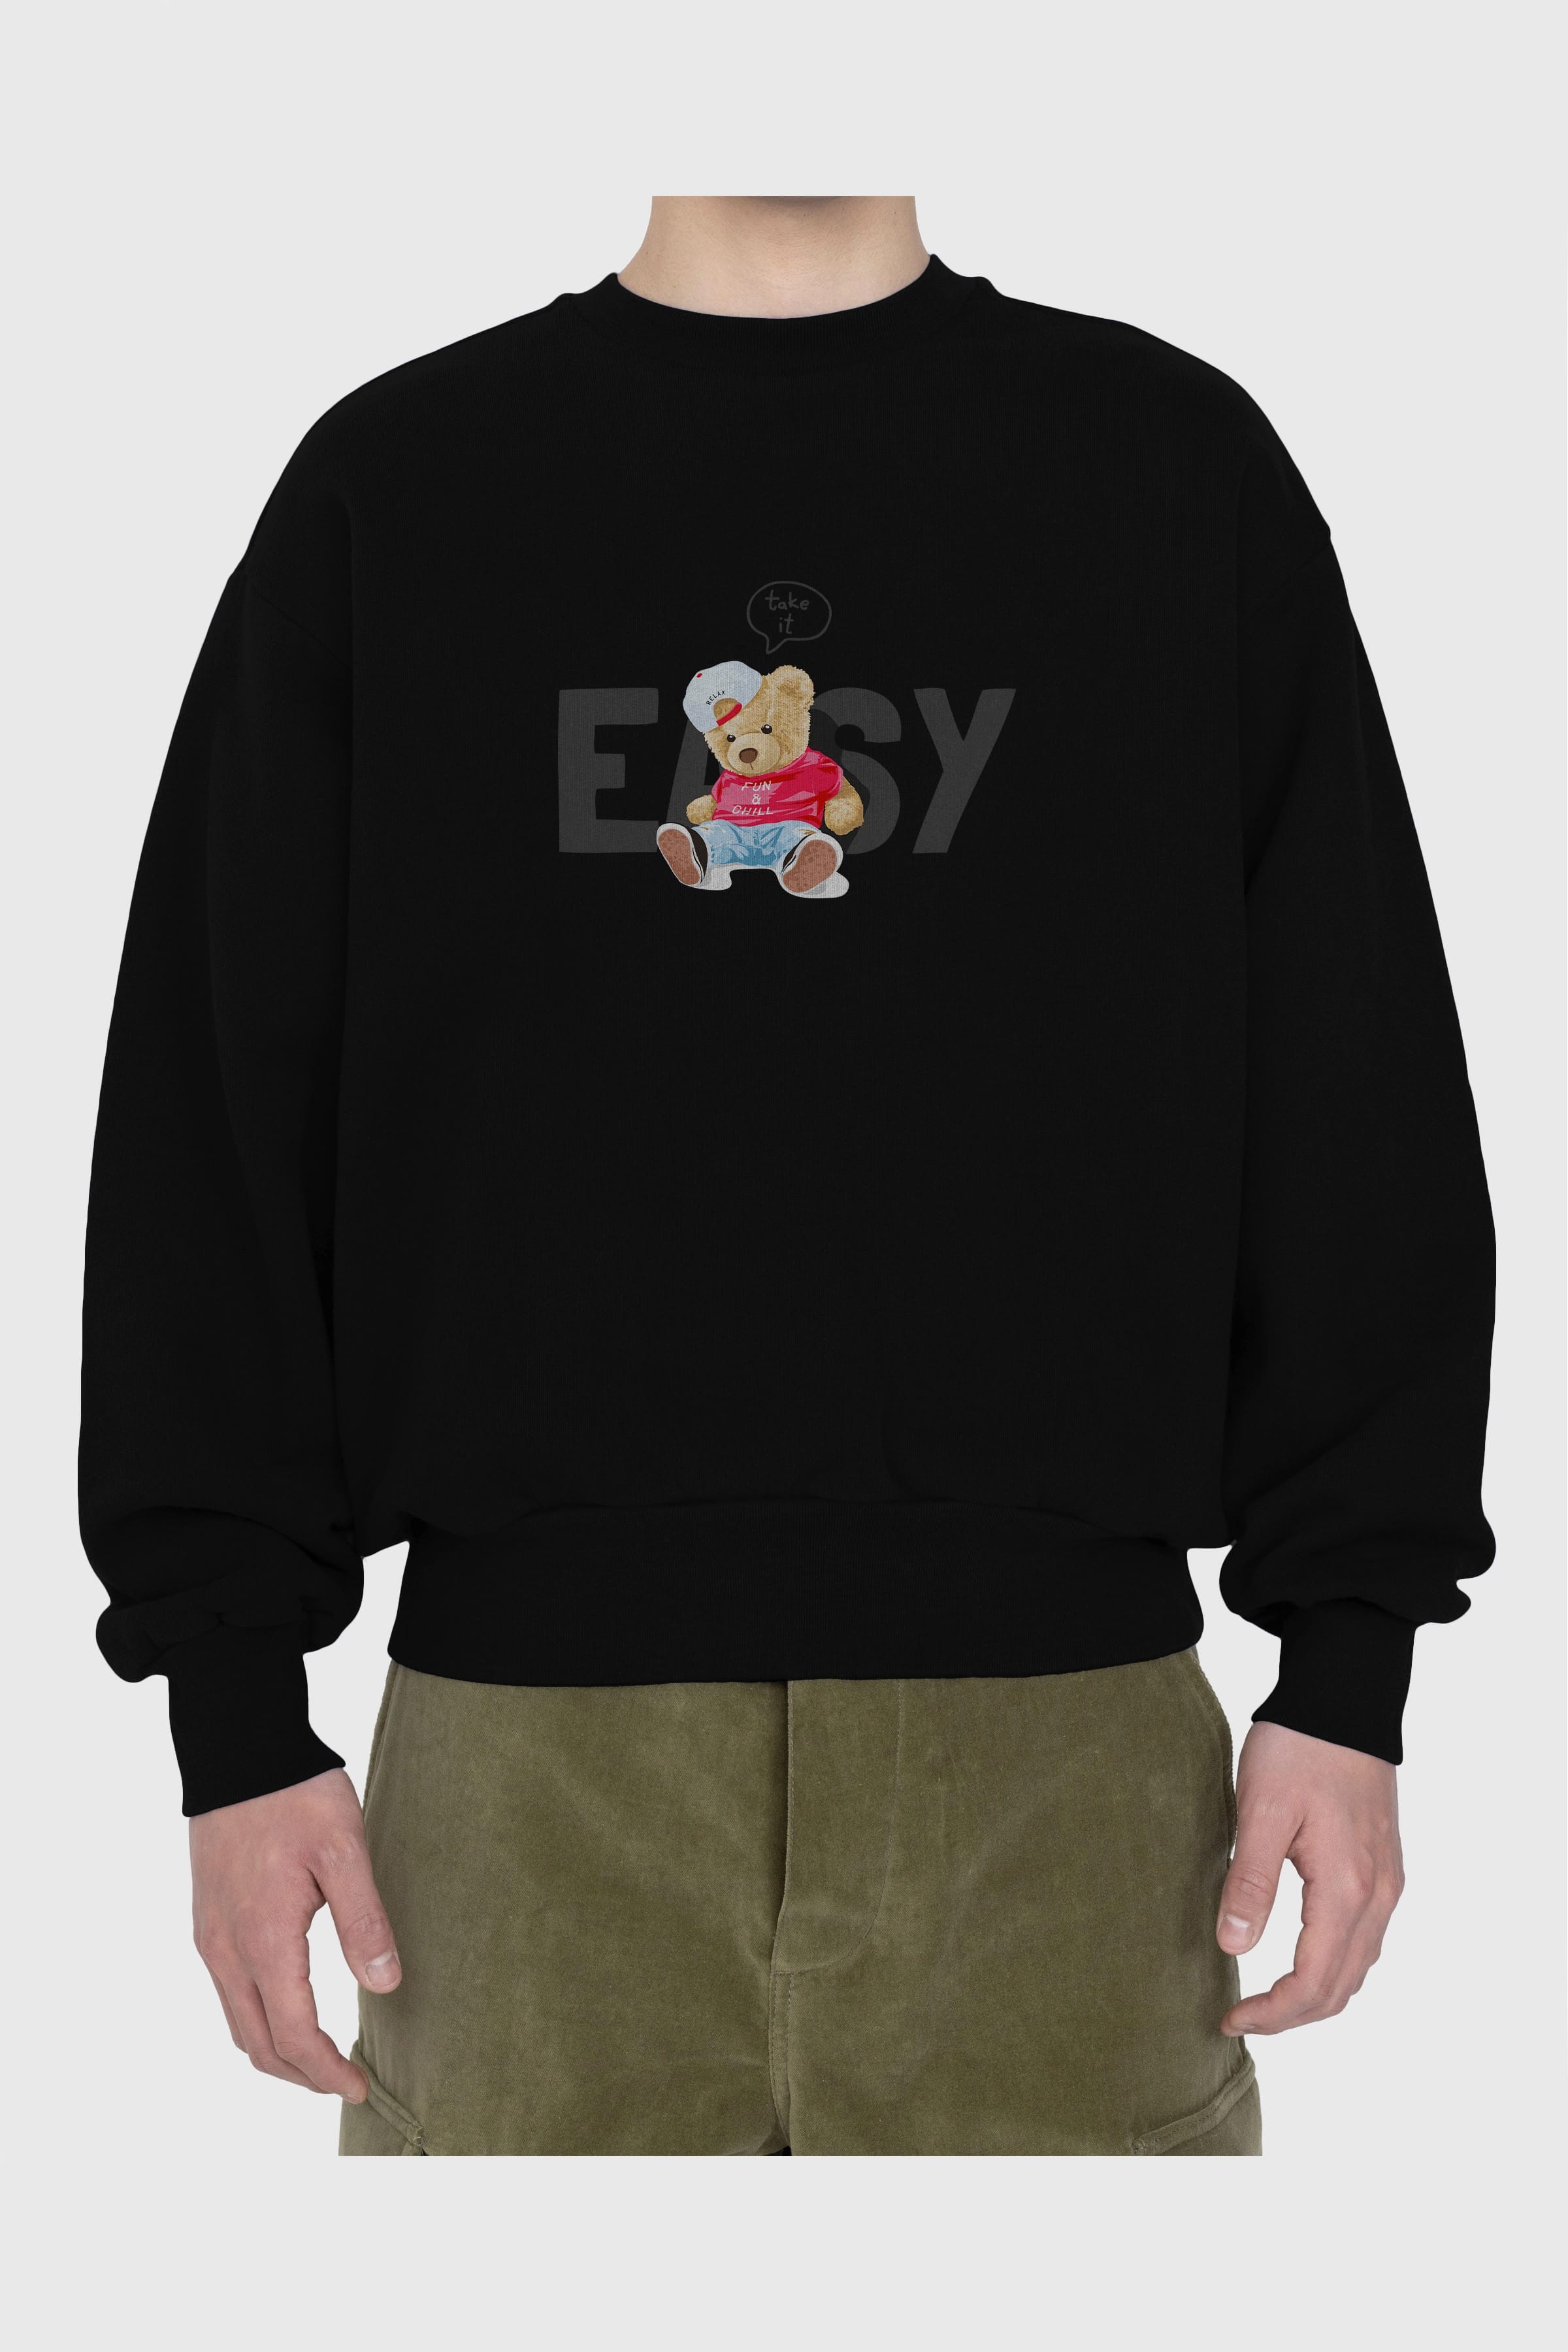 Teddy Bear Easy Ön Baskılı Oversize Sweatshirt Erkek Kadın Unisex